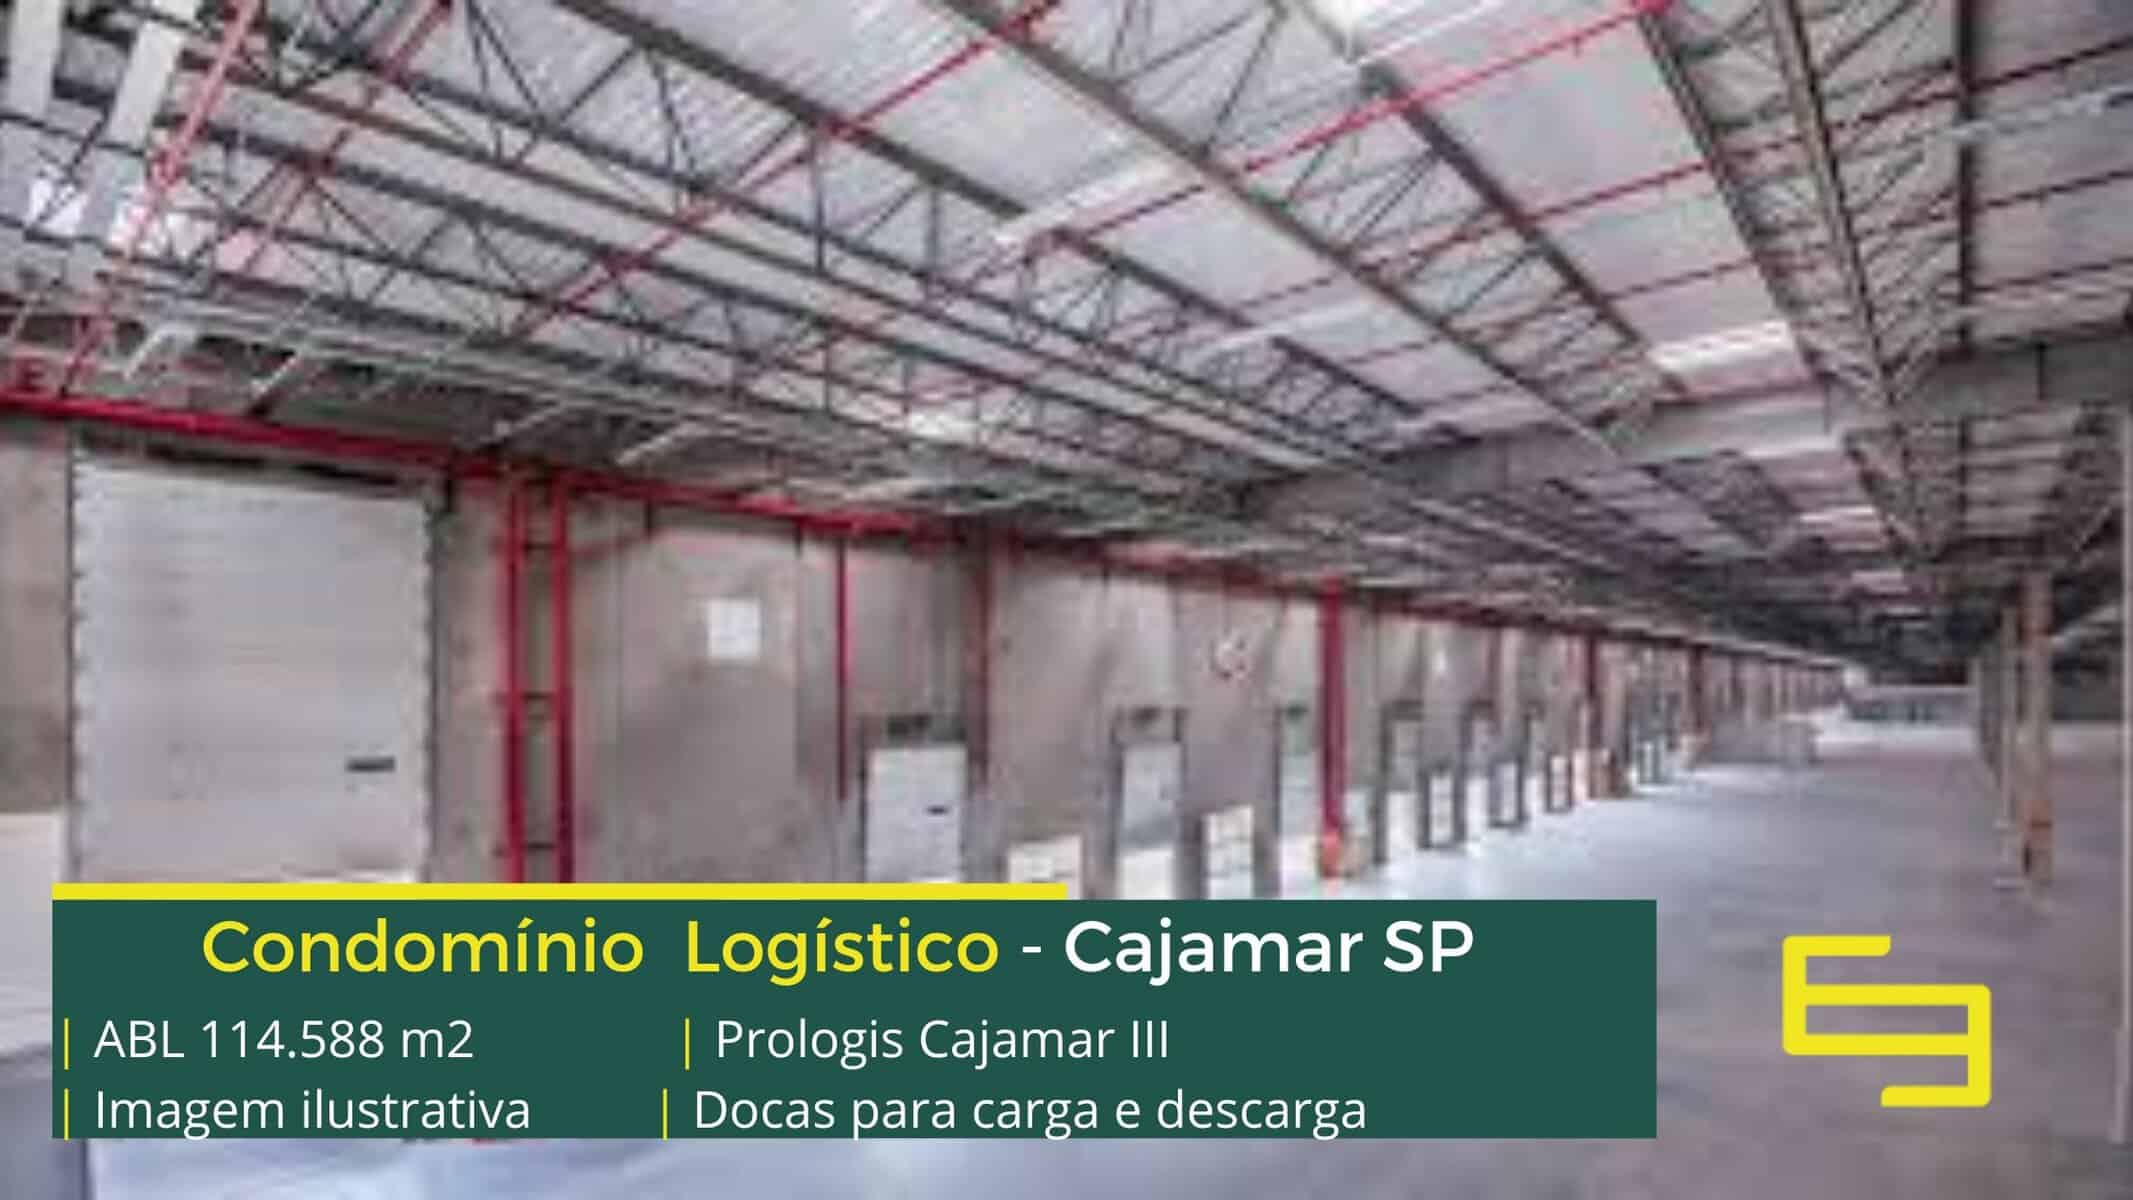 Galpão logístico Cajamar SP - Prologis Cajamar III